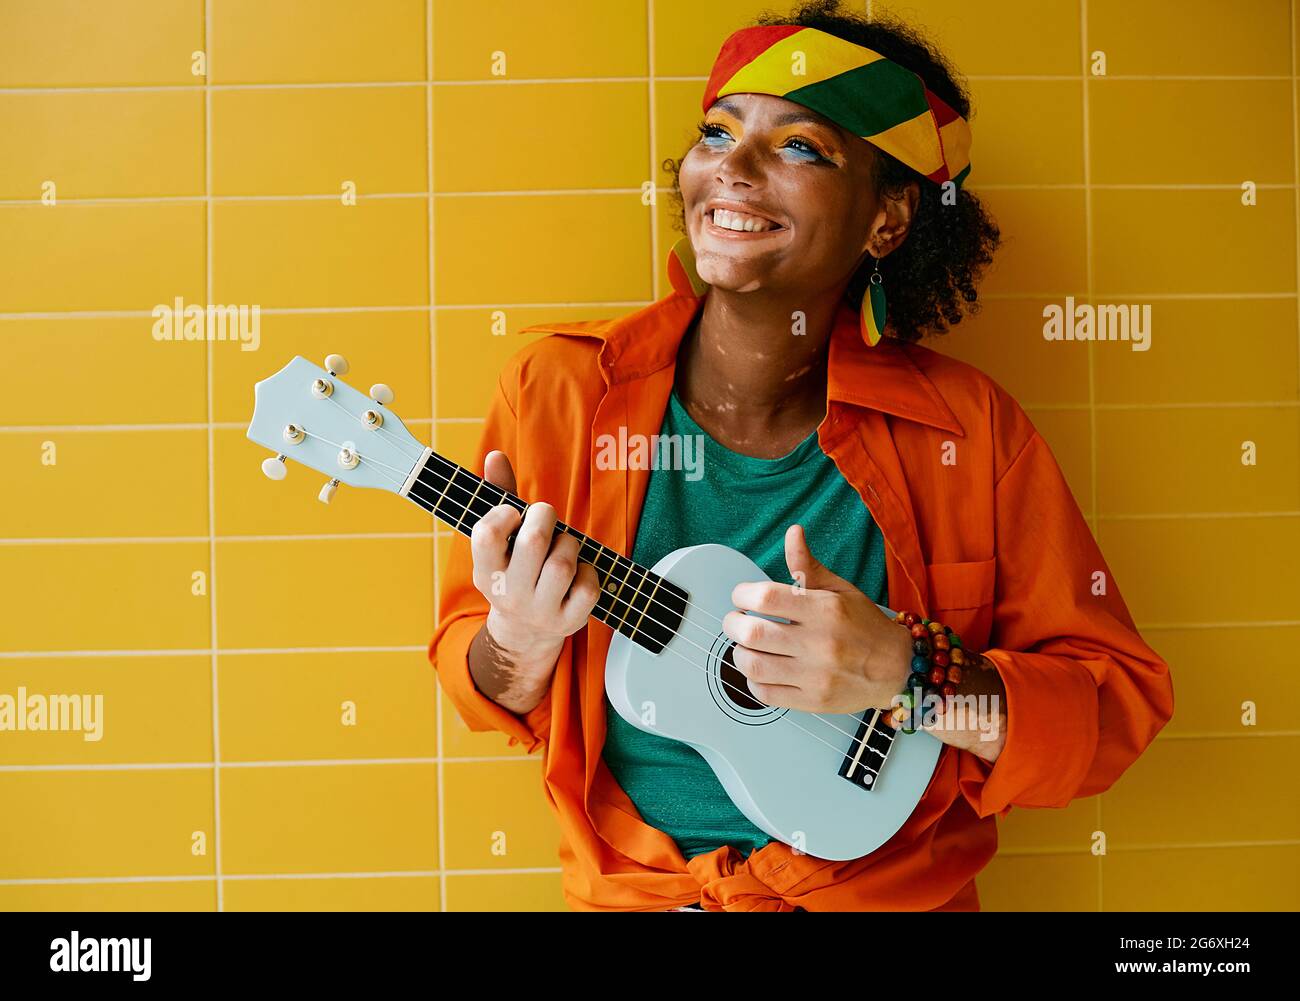 Amusant rastafarian femme jouant bleu ukulele près du mur jaune. Musicienne de rue Banque D'Images